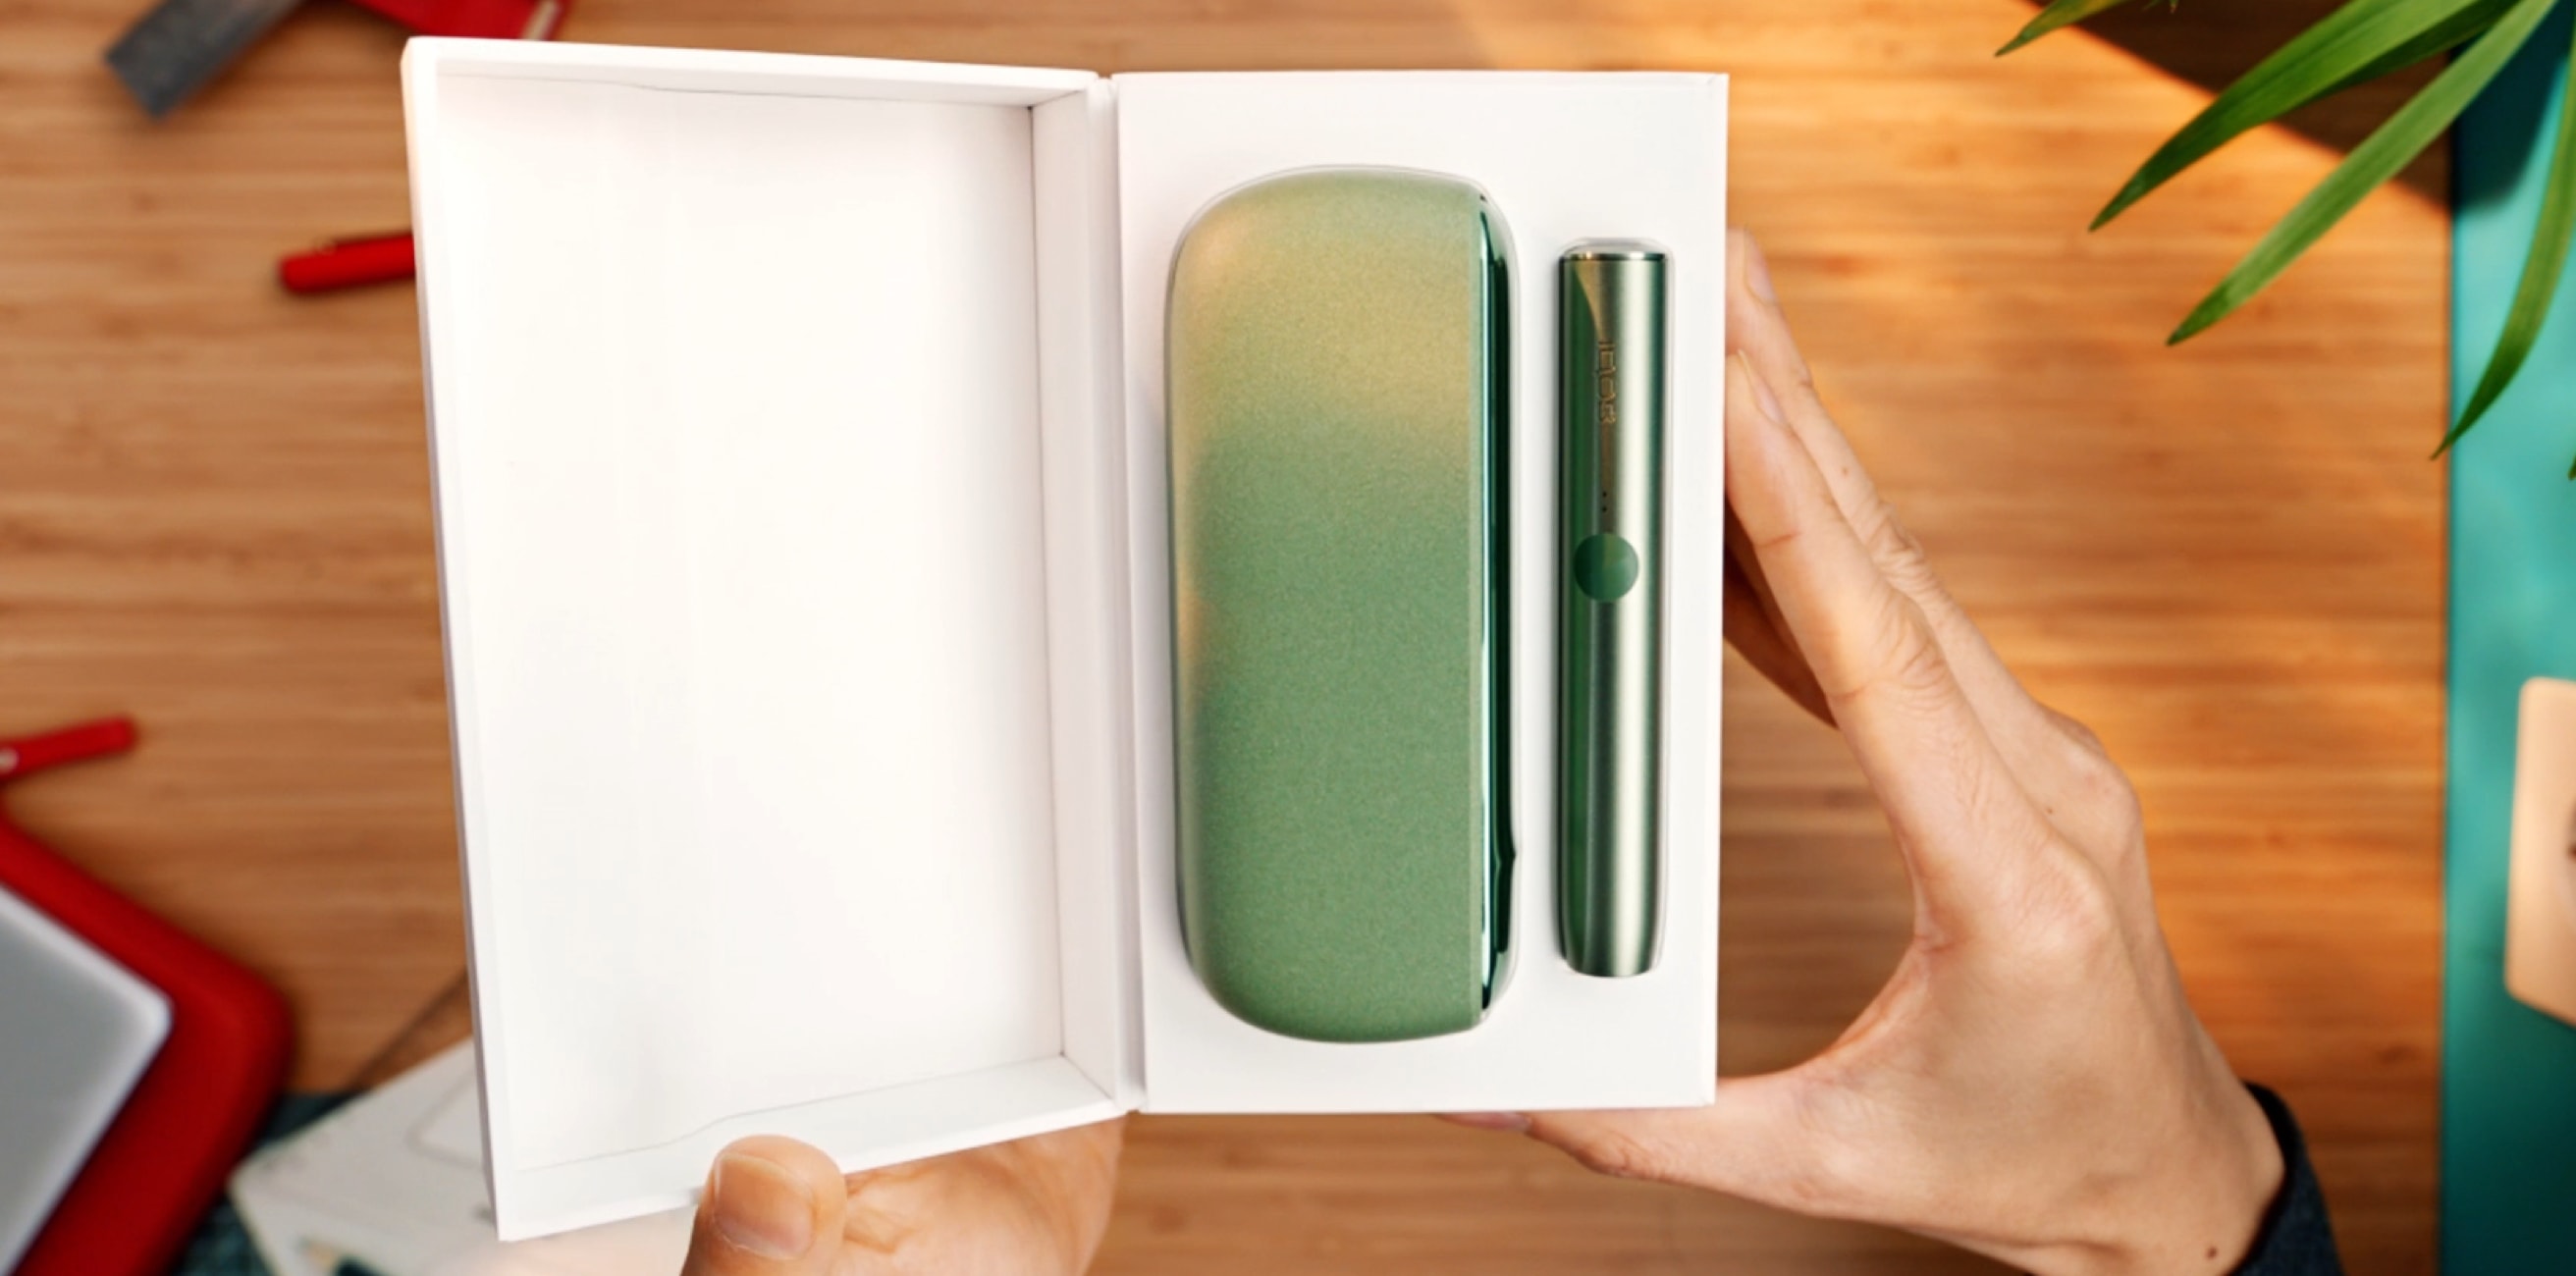 Βάση και φορτιστής τσέπης IQOS ILUMA σε χρώμα Moss Green μέσα σε ένα κουτί.